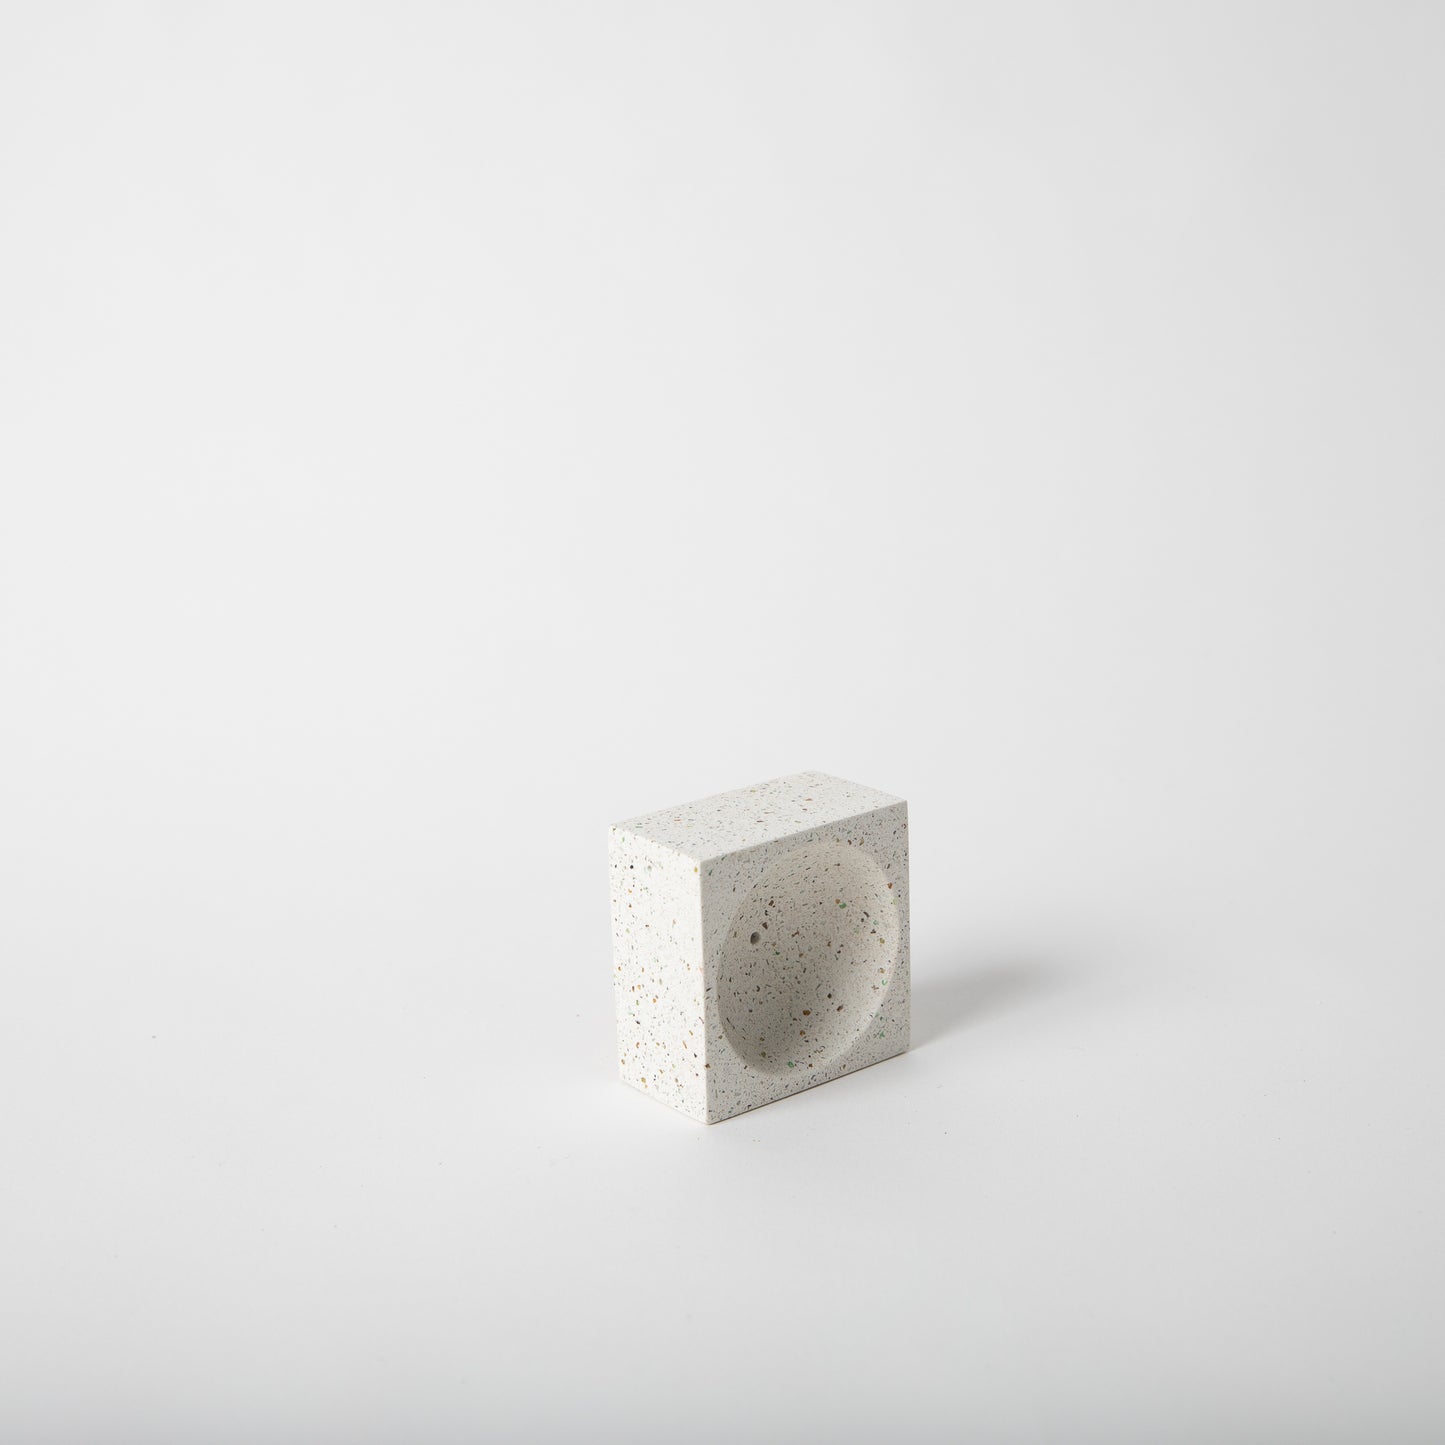 Square concrete terrazzo incense holder in white.